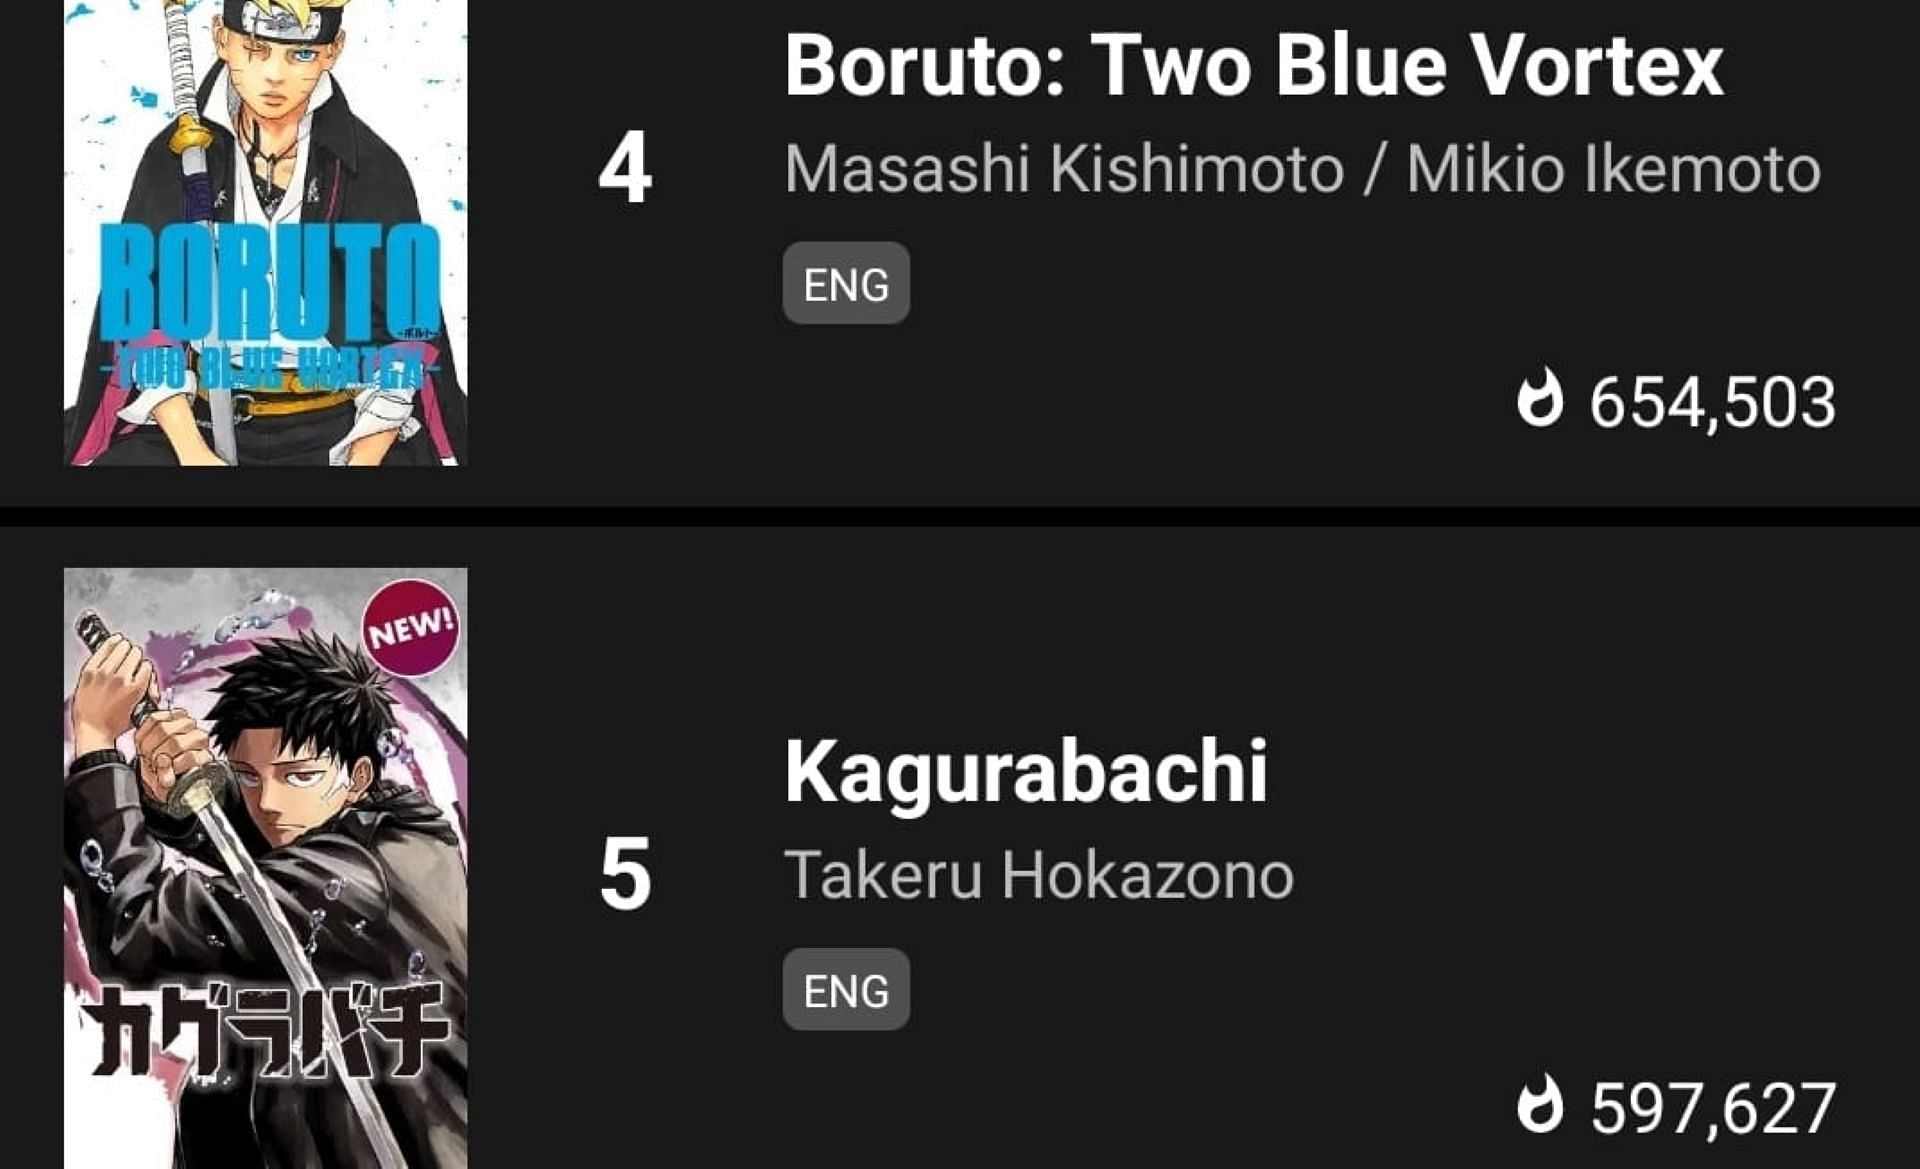 Boruto: Two Blue Vortex - Masashi Kishimoto / Mikio Ikemoto